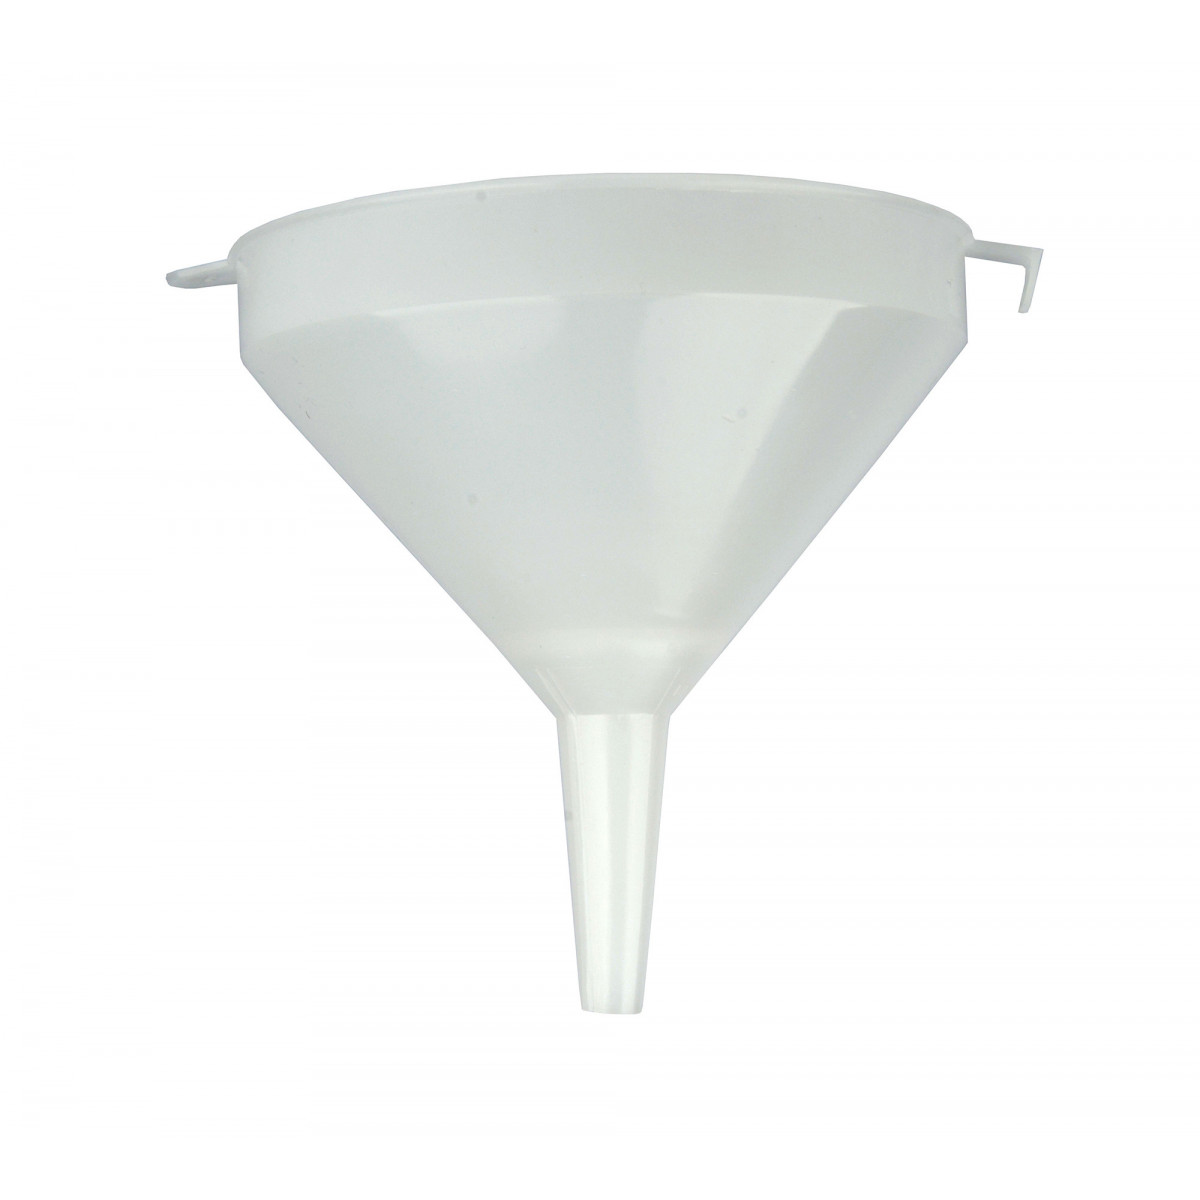 funnel plastic 15 cm diam. with sieve